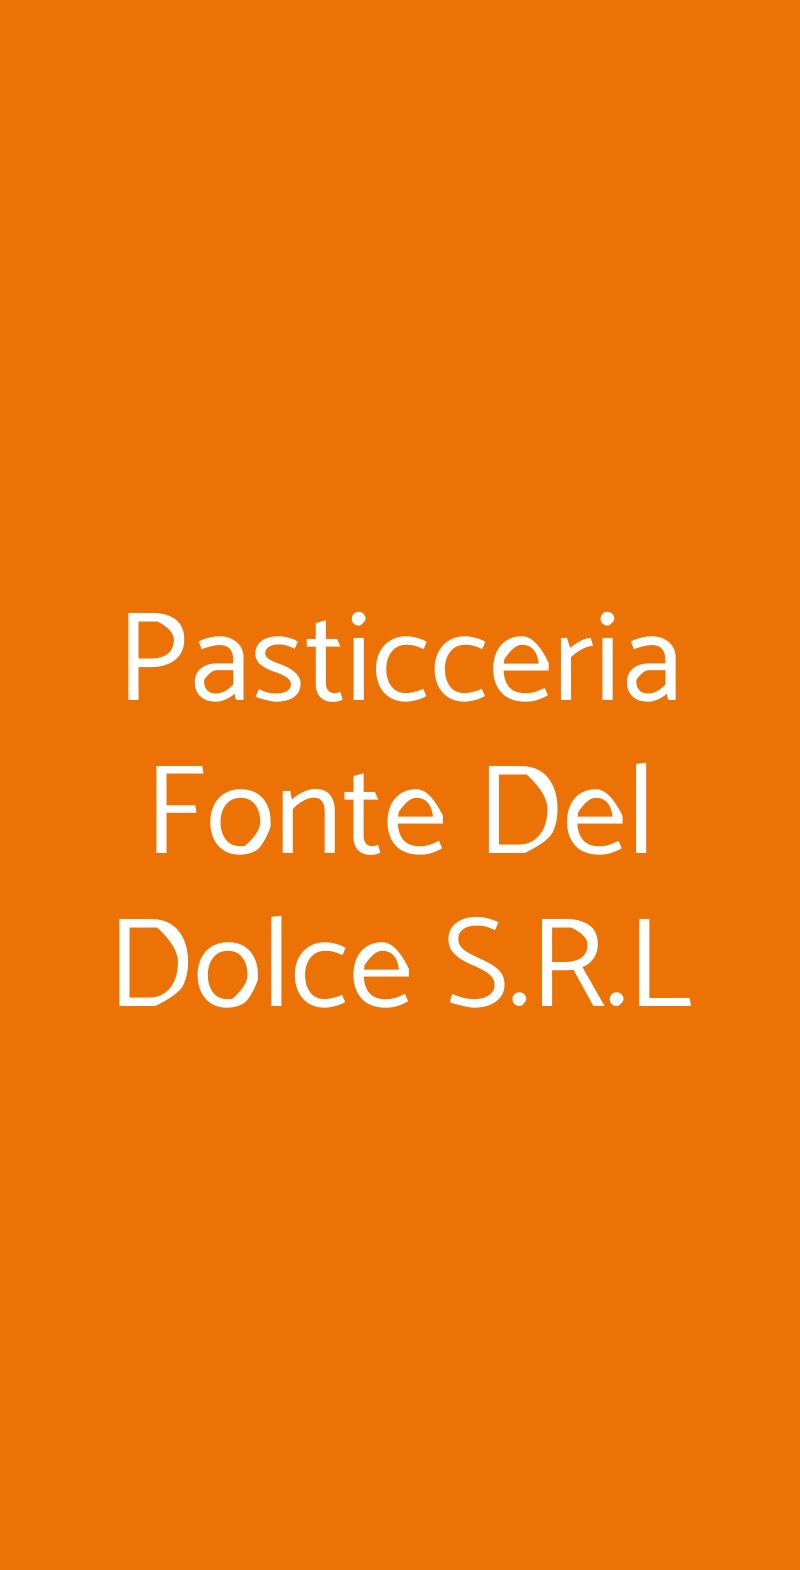 Pasticceria Fonte Del Dolce S.R.L Milano menù 1 pagina